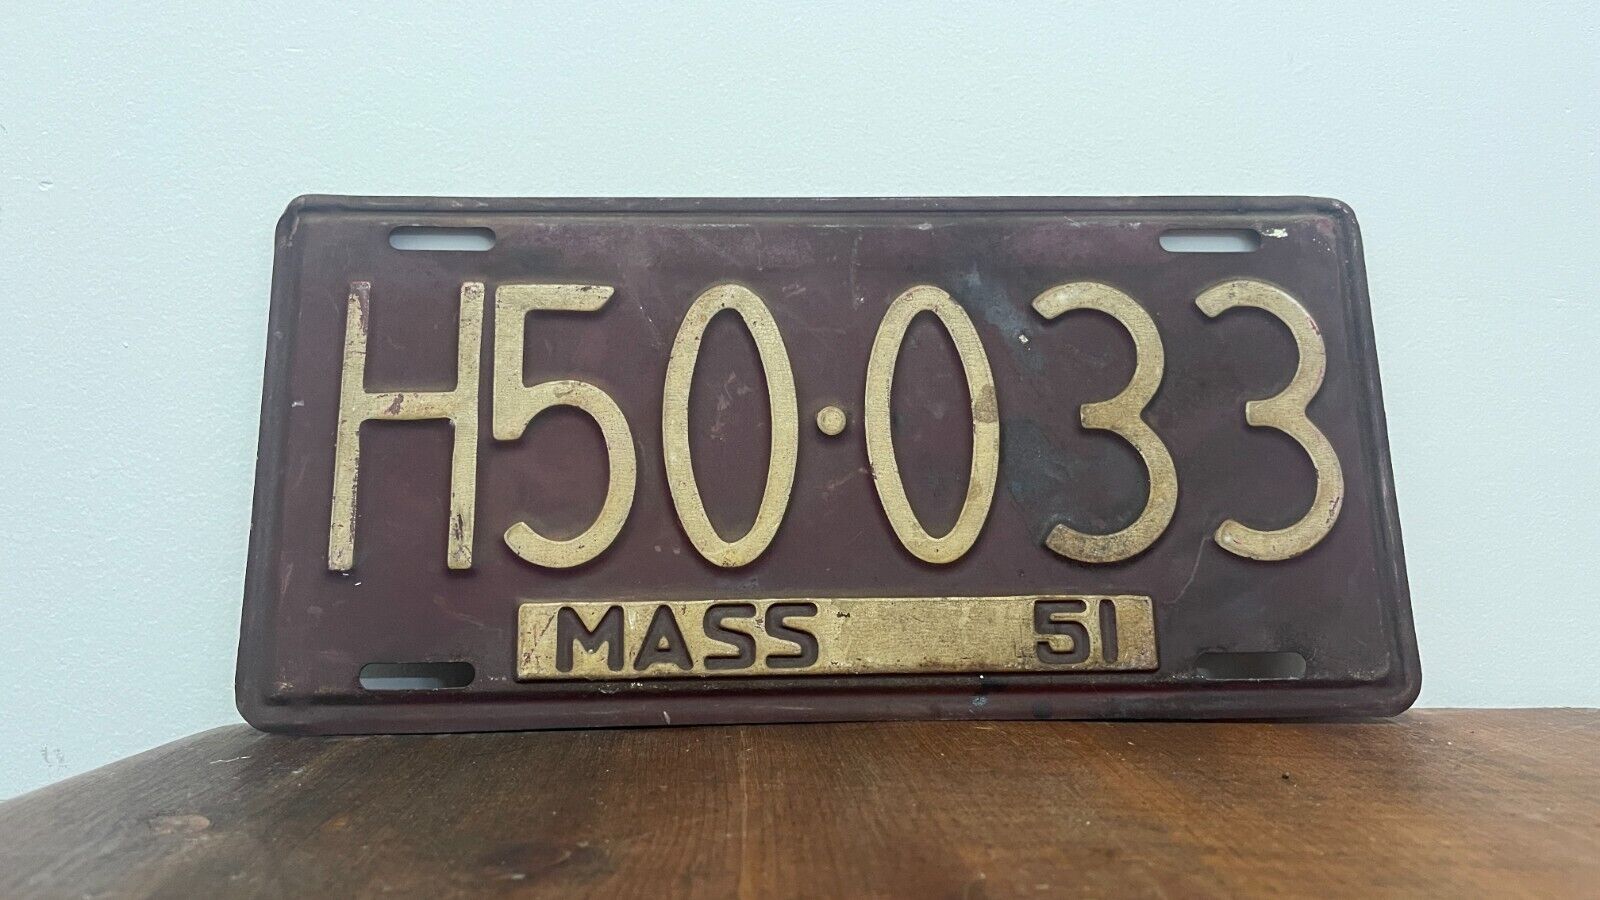 Massachusetts 1951 Vintage License Plate H50 033